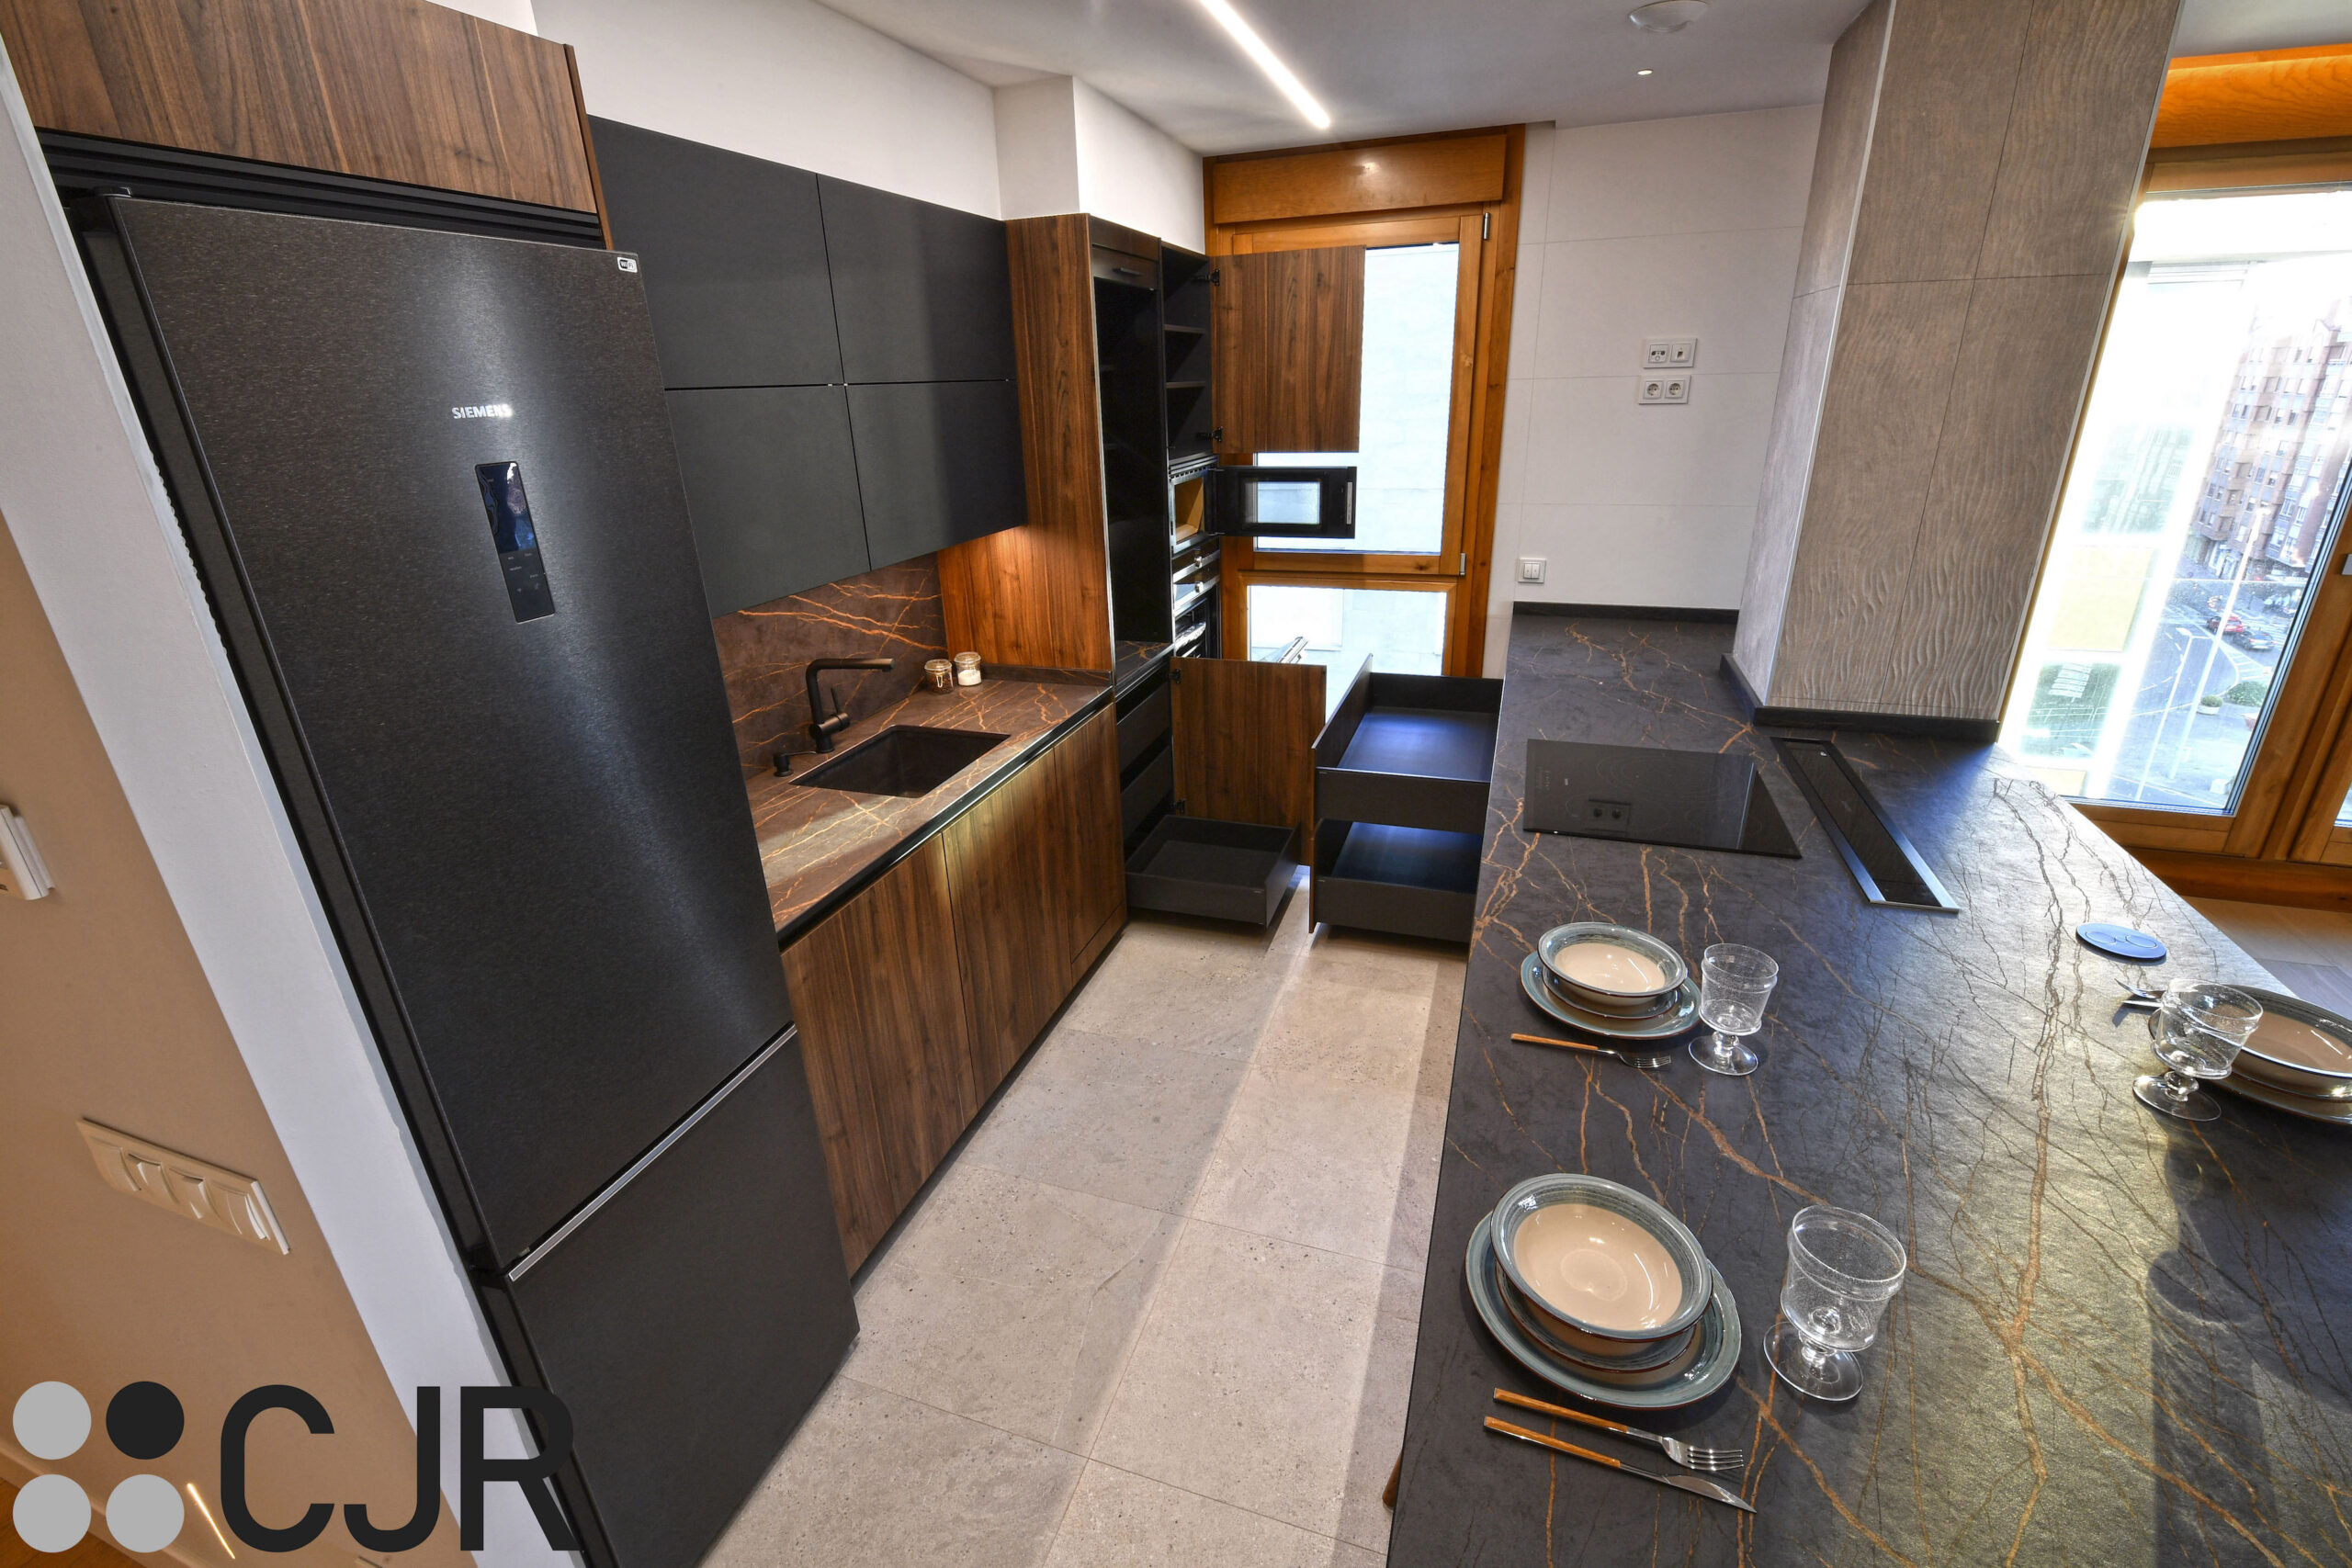 cocina abierta al salon con muebles bajos de cocina en madera y negro cocinas cjr